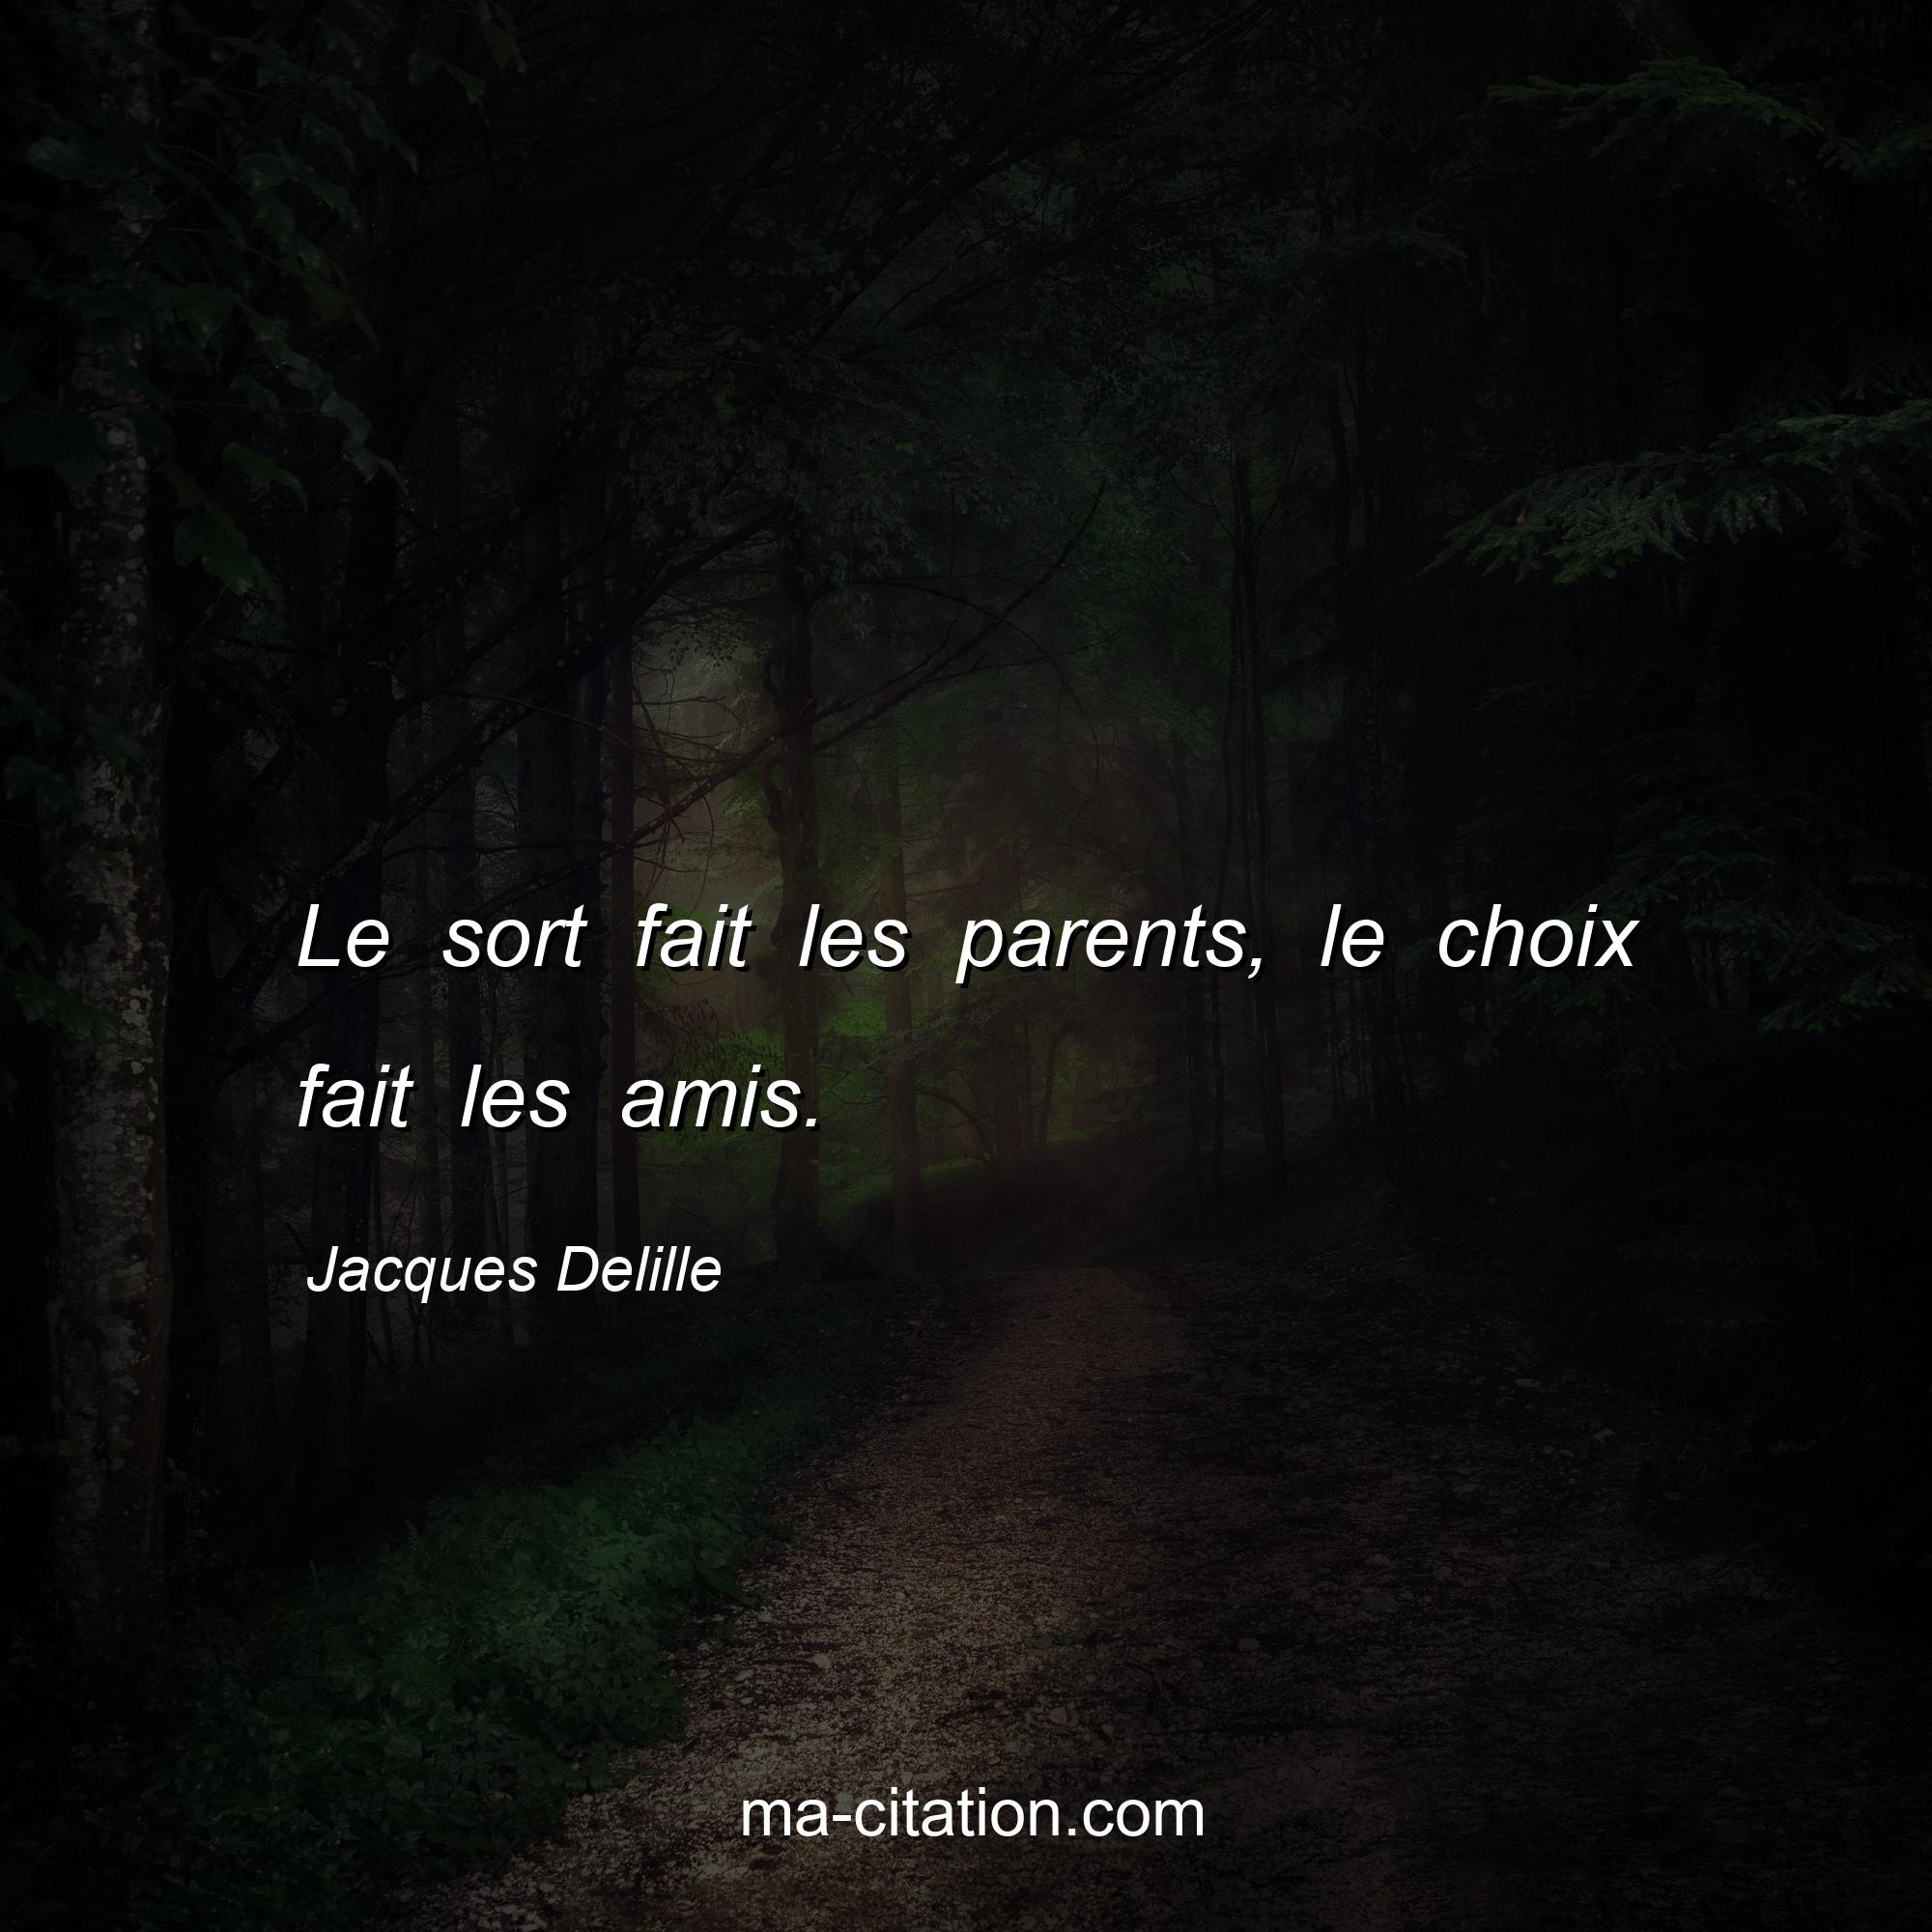 Jacques Delille : Le sort fait les parents, le choix fait les amis.